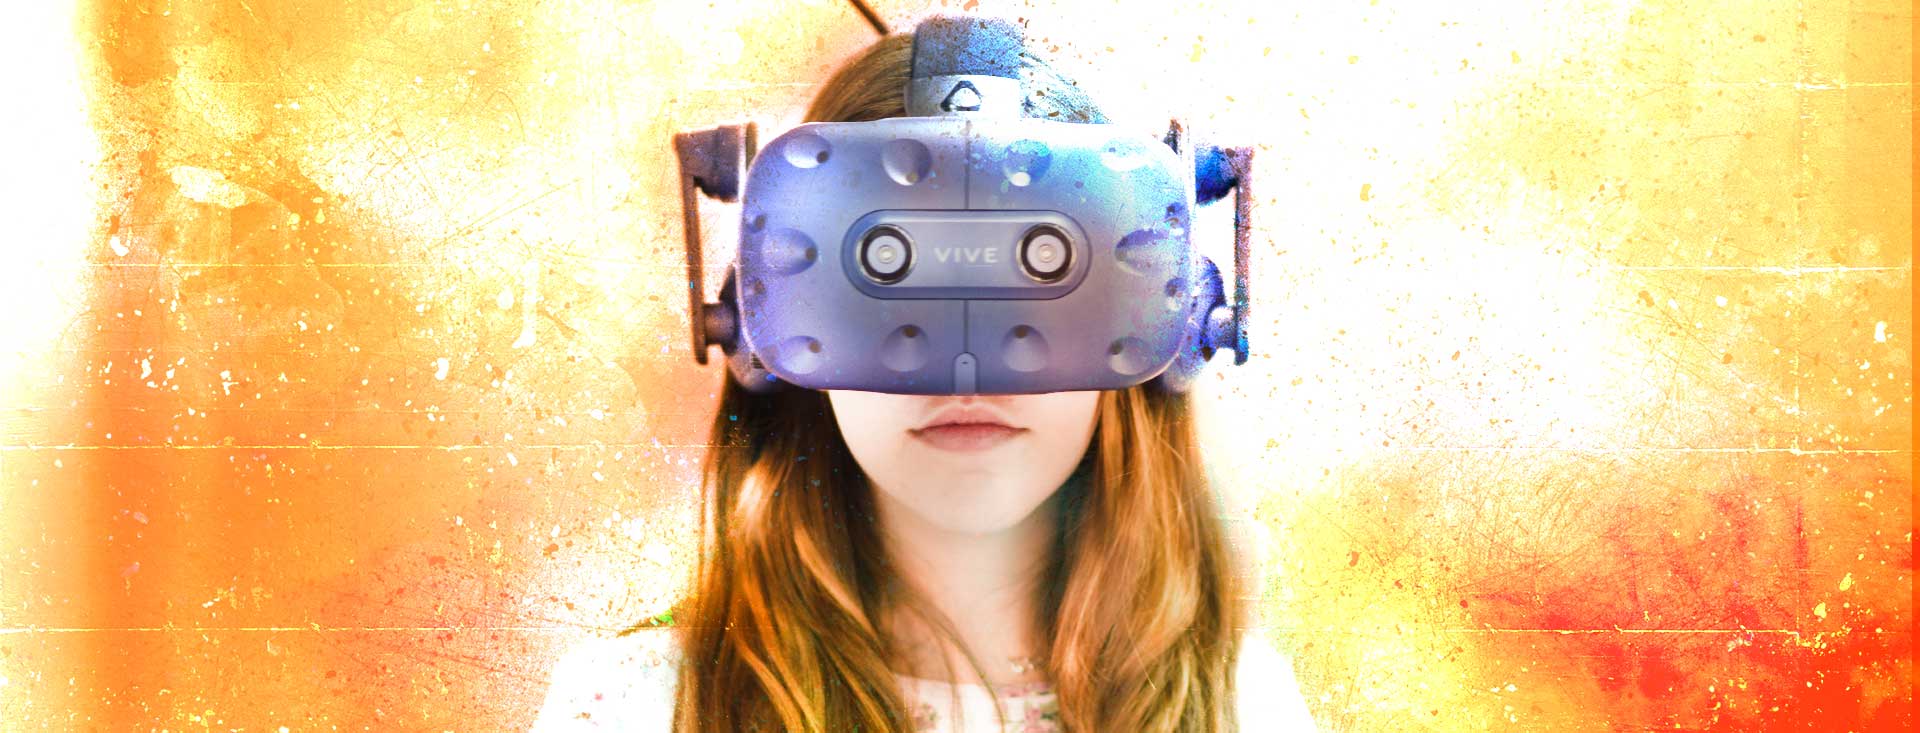 Gafas HTC VIVE Pro para la realidad virtual más avanzada del mercado